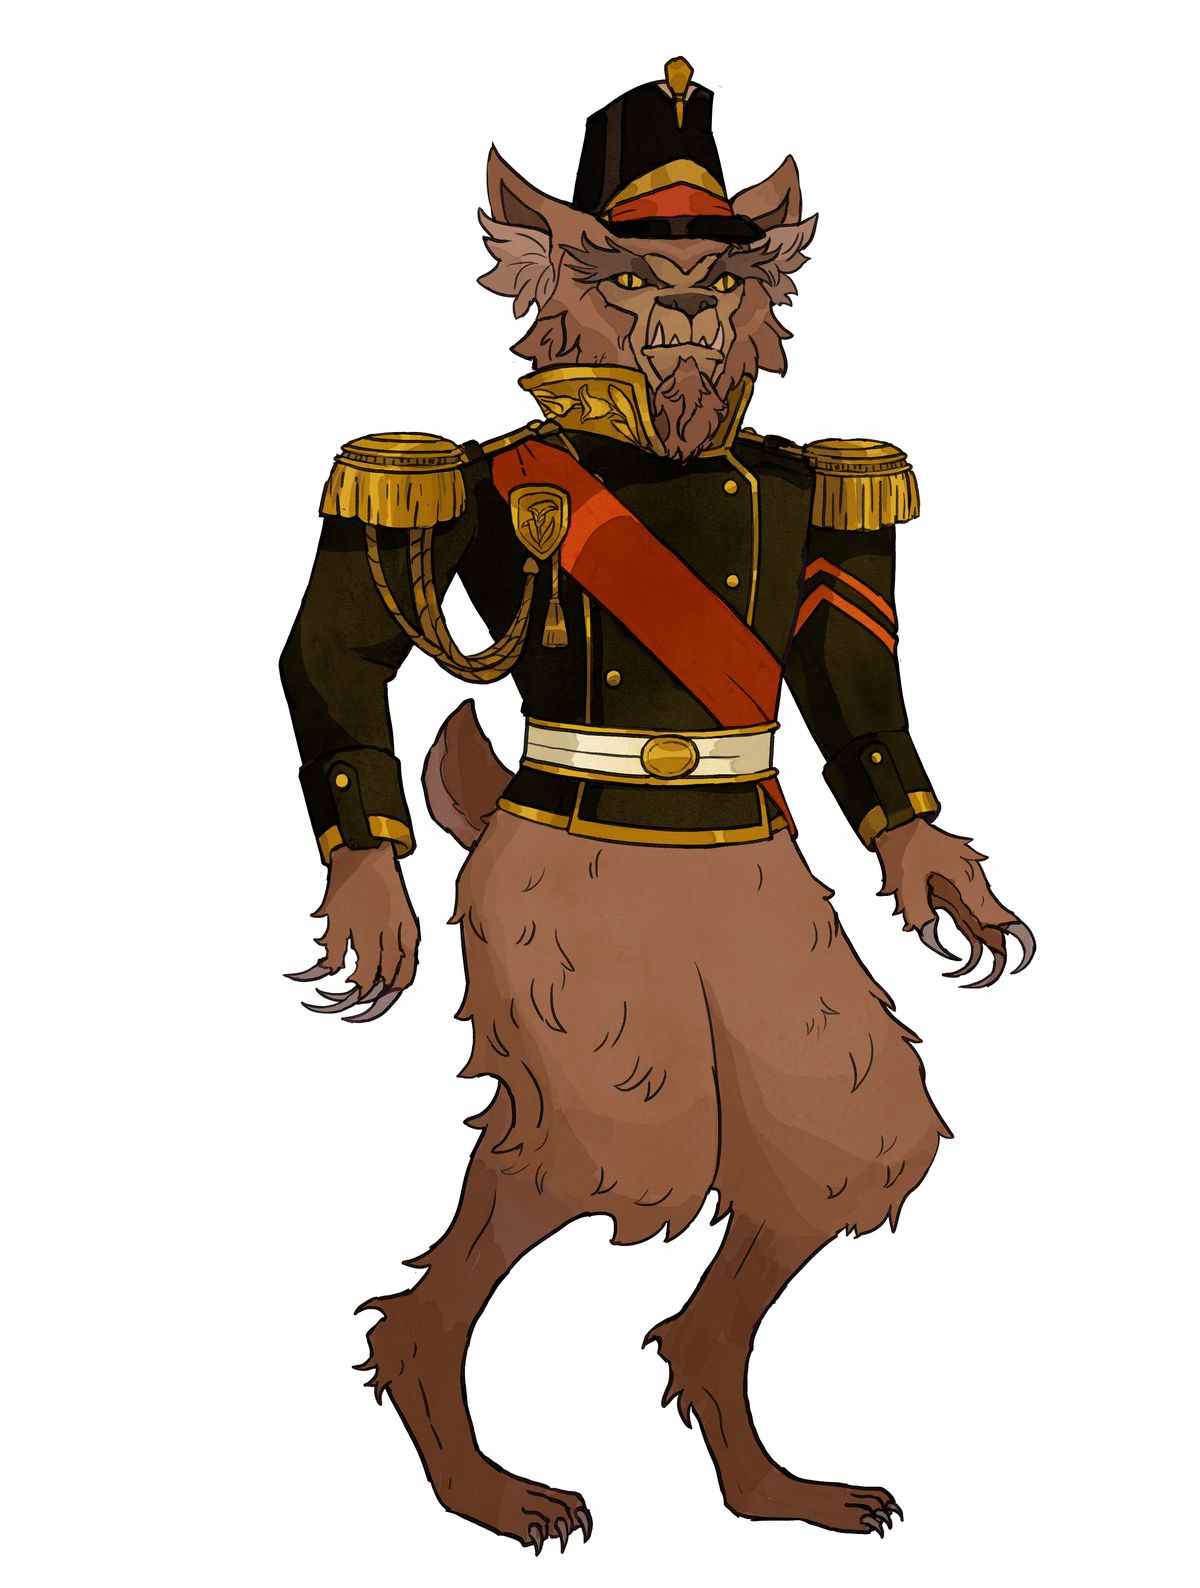 Un hibou habillé en tenue militaire.  Ses griffes sont immaculées, tout comme sa ceinture rouge.  Il n'a pas de pantalon.